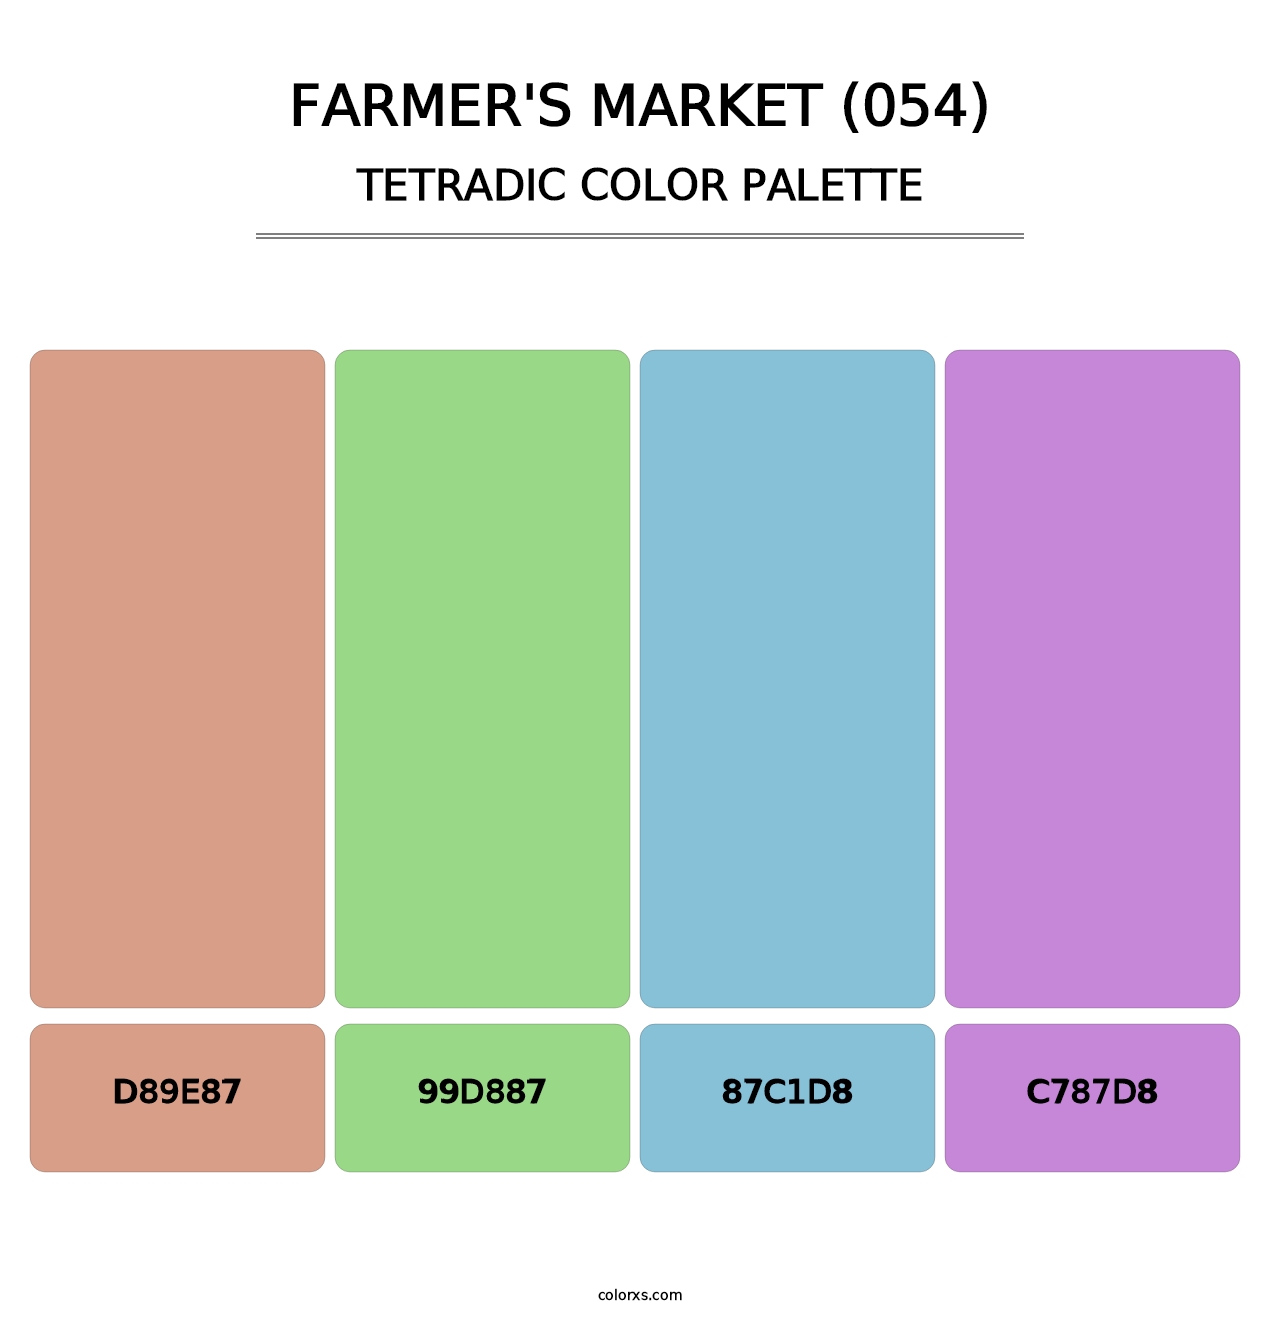 Farmer's Market (054) - Tetradic Color Palette